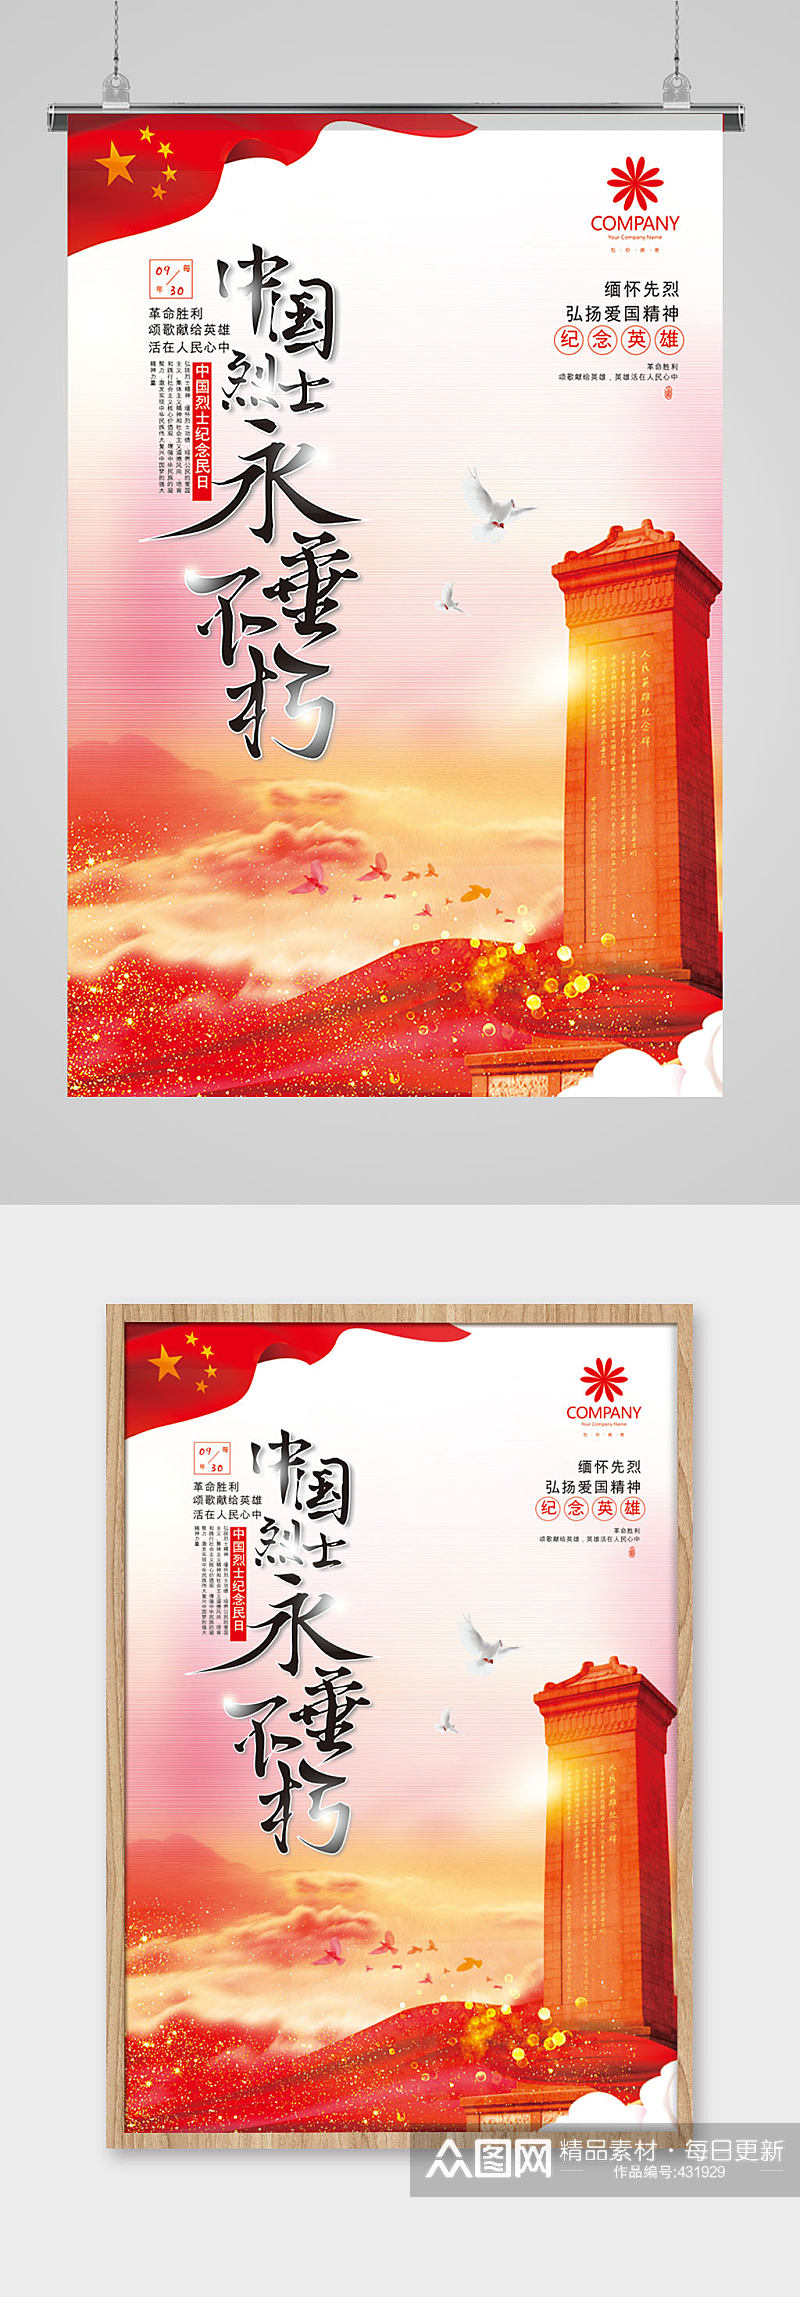 中国烈士永垂不朽中国烈士纪念日海报素材